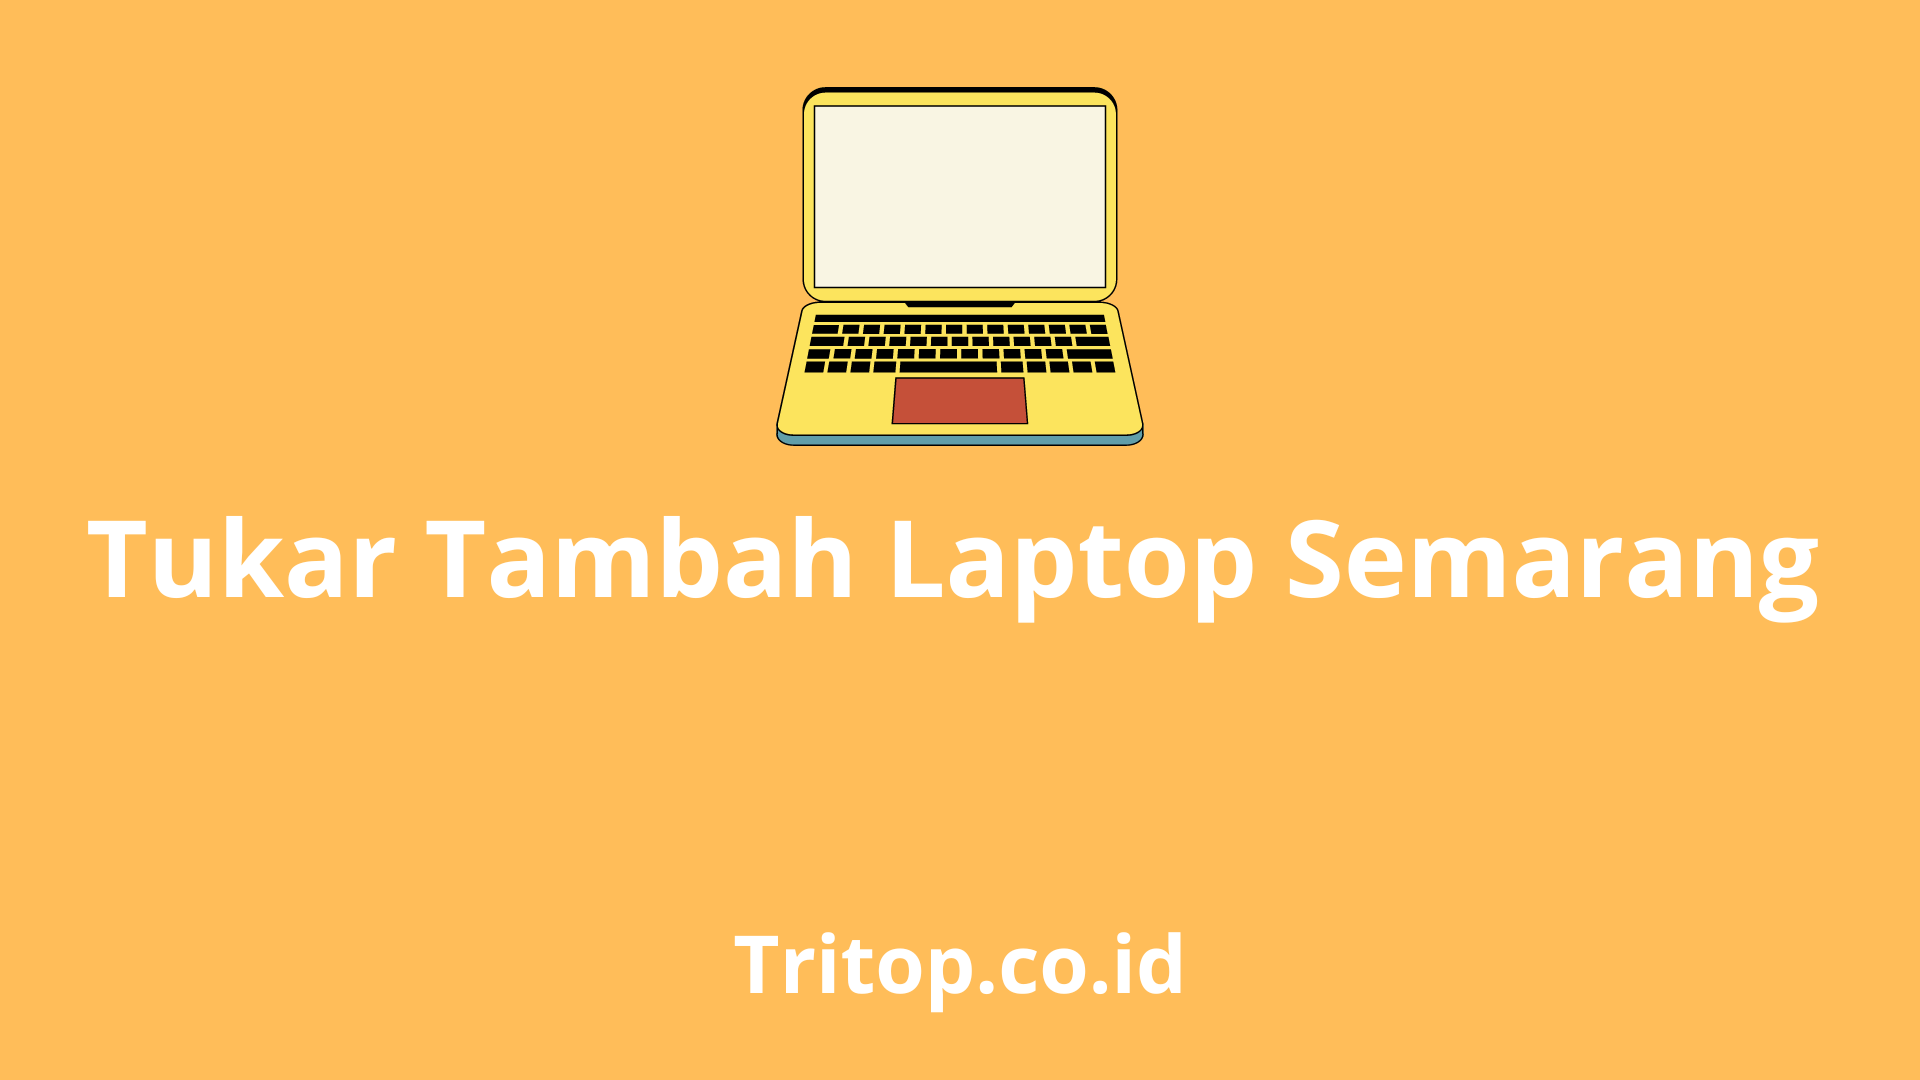 Tukar Tambah Laptop Semarang tritop.co.id